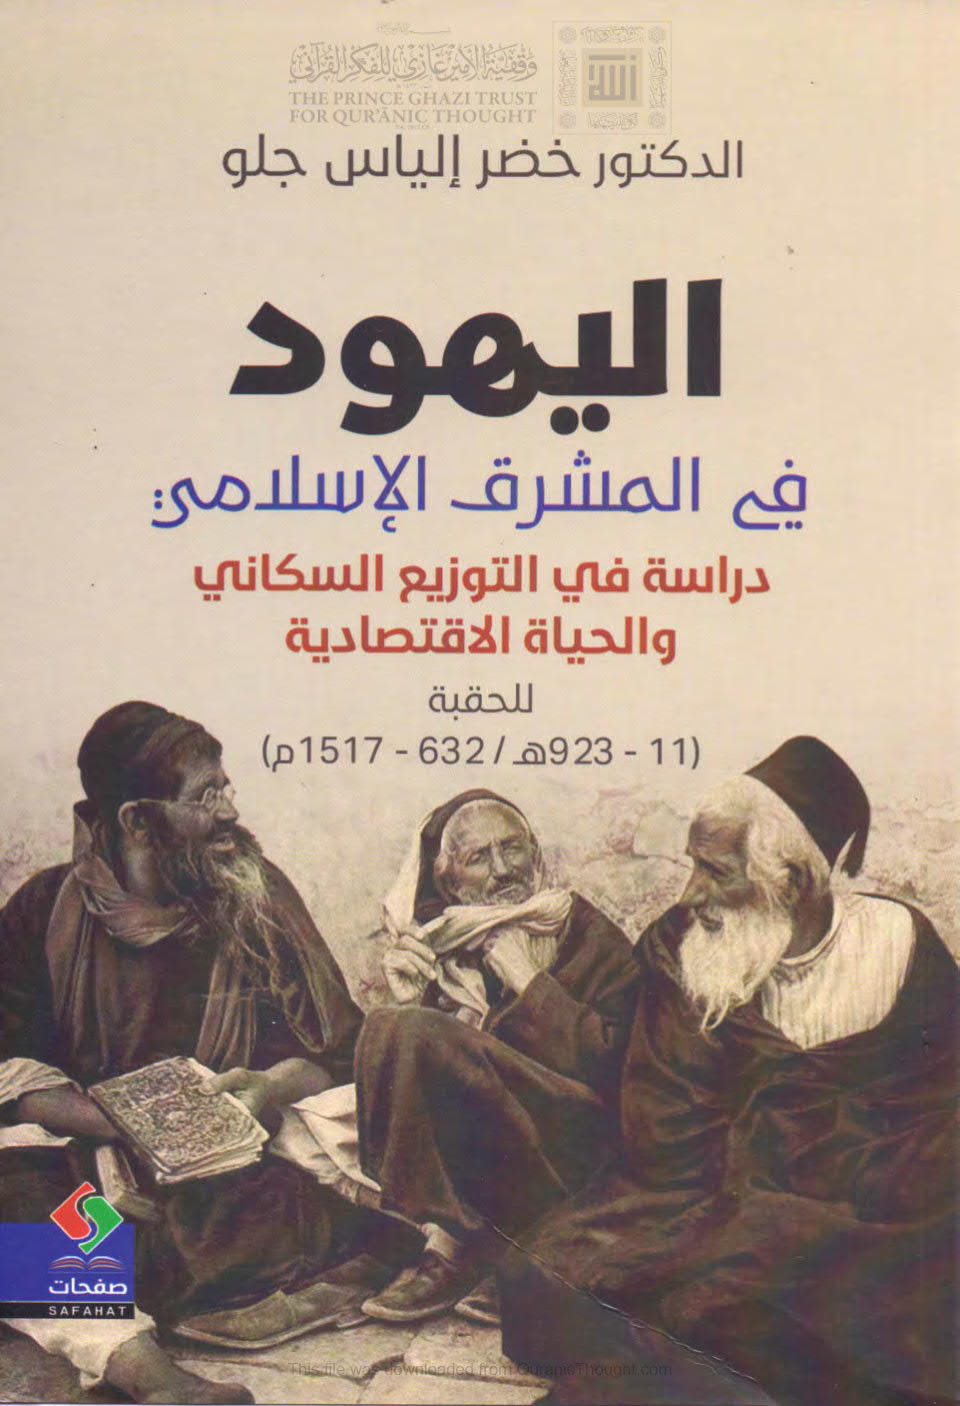 اليهود في المشرق الإسلامي _ دراسة في التوزيع السكاني والحياة الإقتصادية للحقبة ( 11 _ 923هـ / 632 _ 1517م )